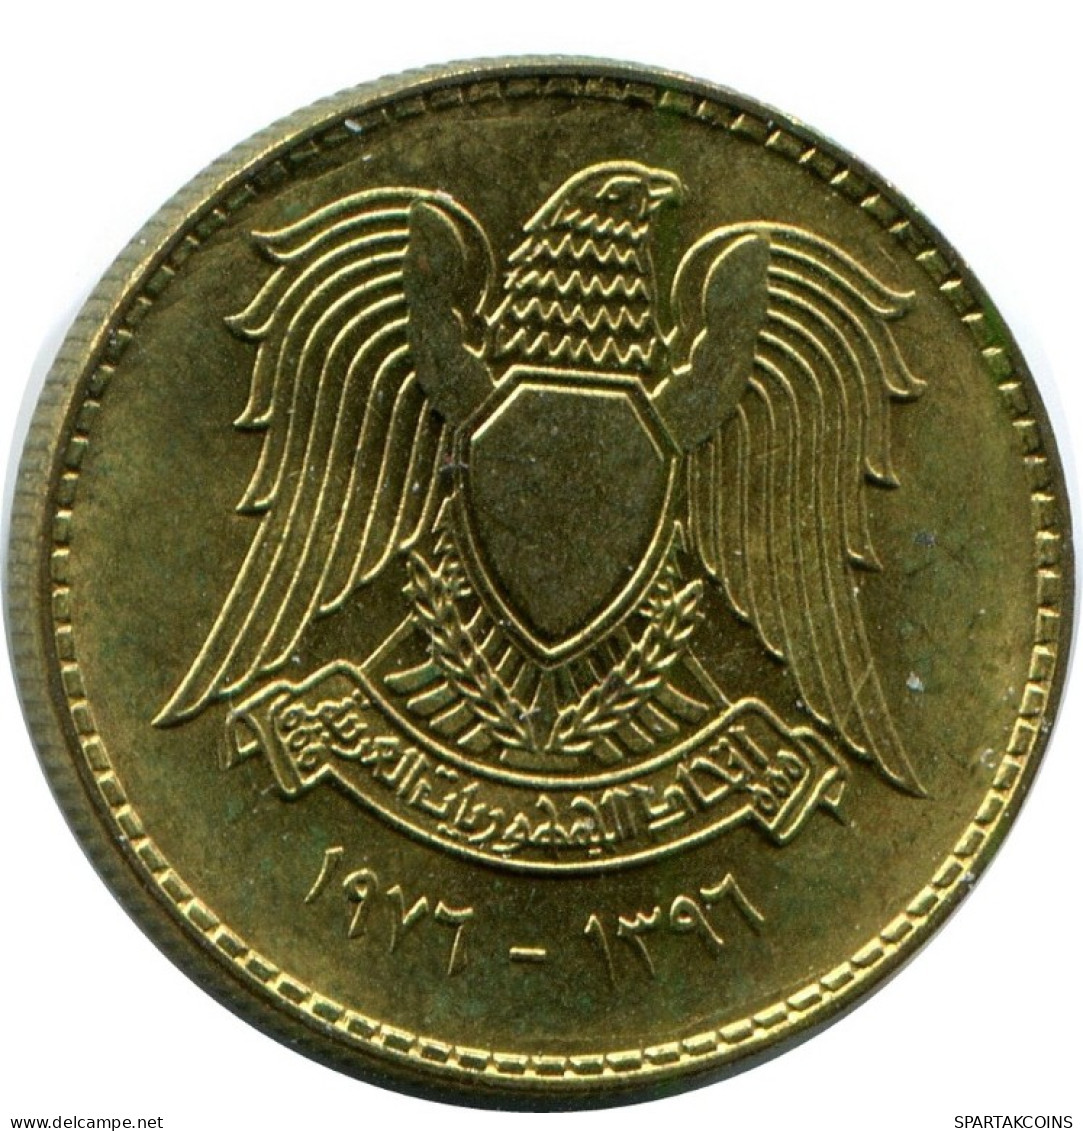 5 QIRSH 1976 SYRIA Islamic Coin #AK219.U.A - Siria